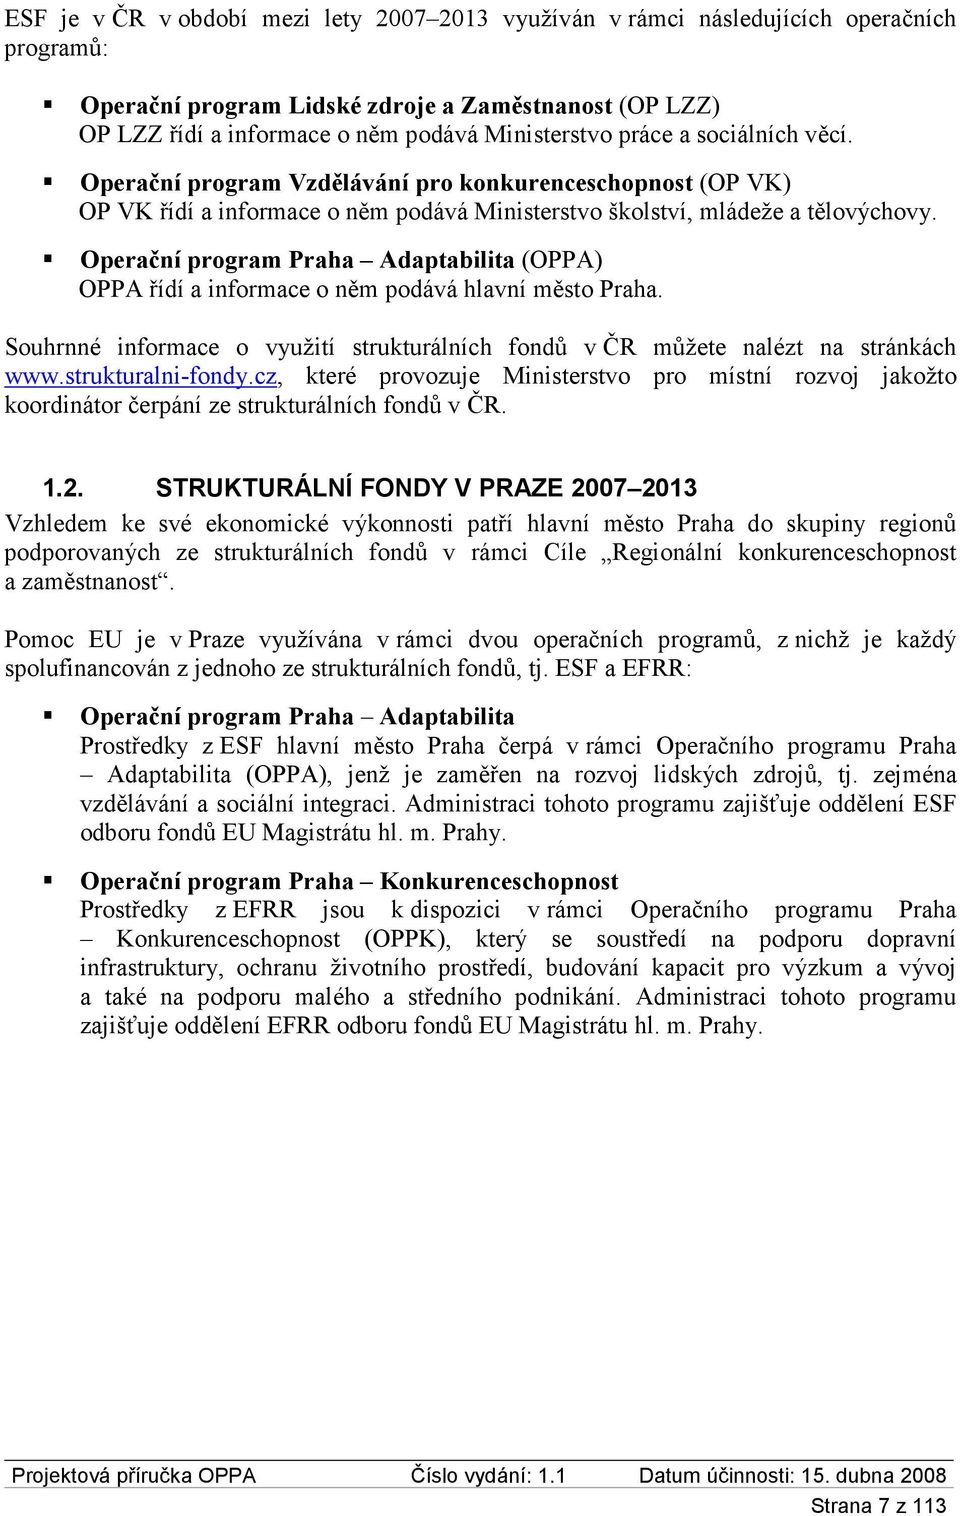 Operační program Praha Adaptabilita (OPPA) OPPA řídí a informace o něm podává hlavní město Praha. Souhrnné informace o využití strukturálních fondů v ČR můžete nalézt na stránkách www.